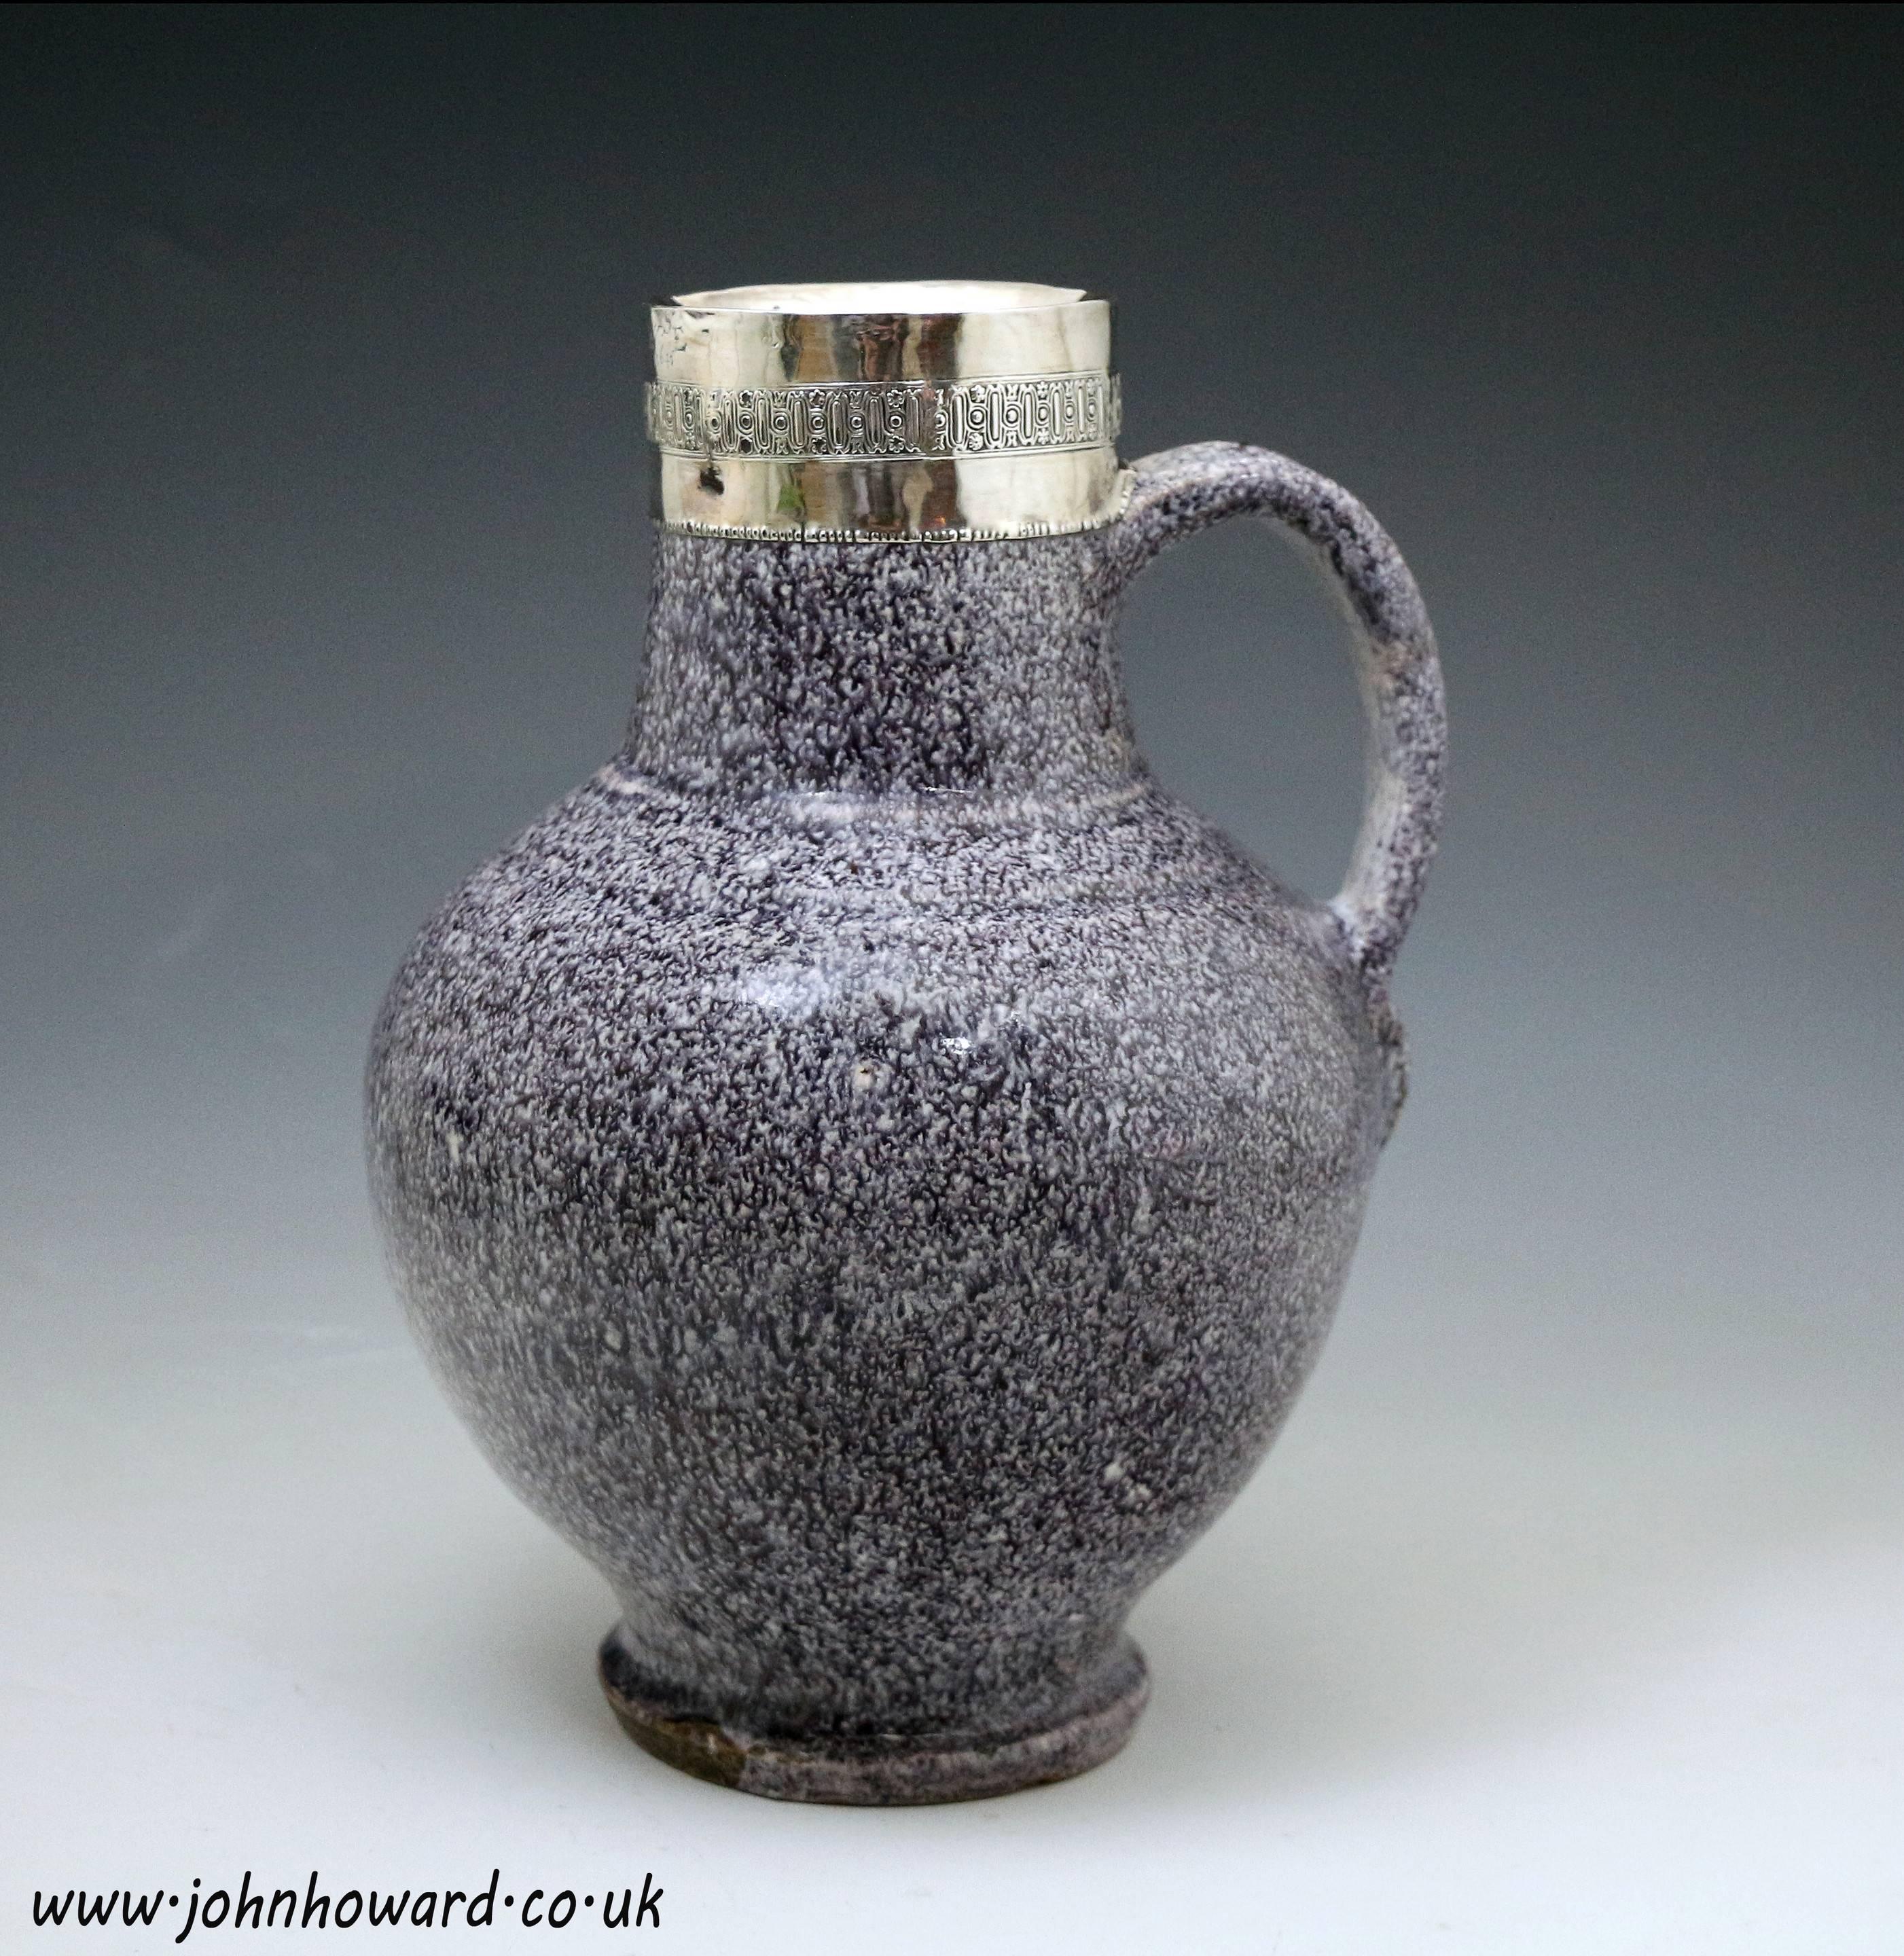 A rare antique pottery delftware 